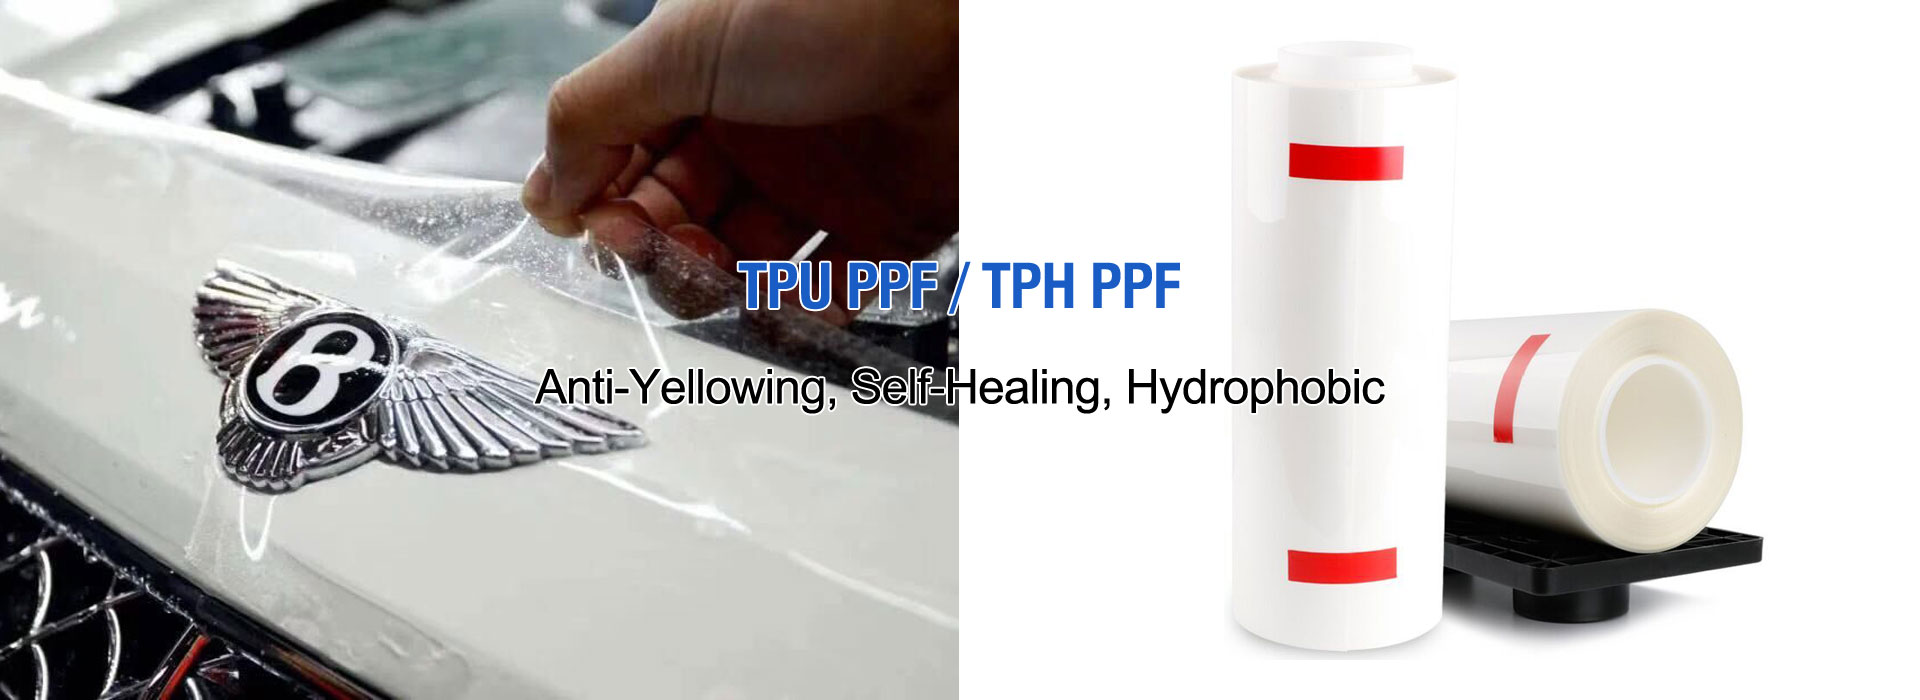 TPU PPE/TPH PPE Tillverkare